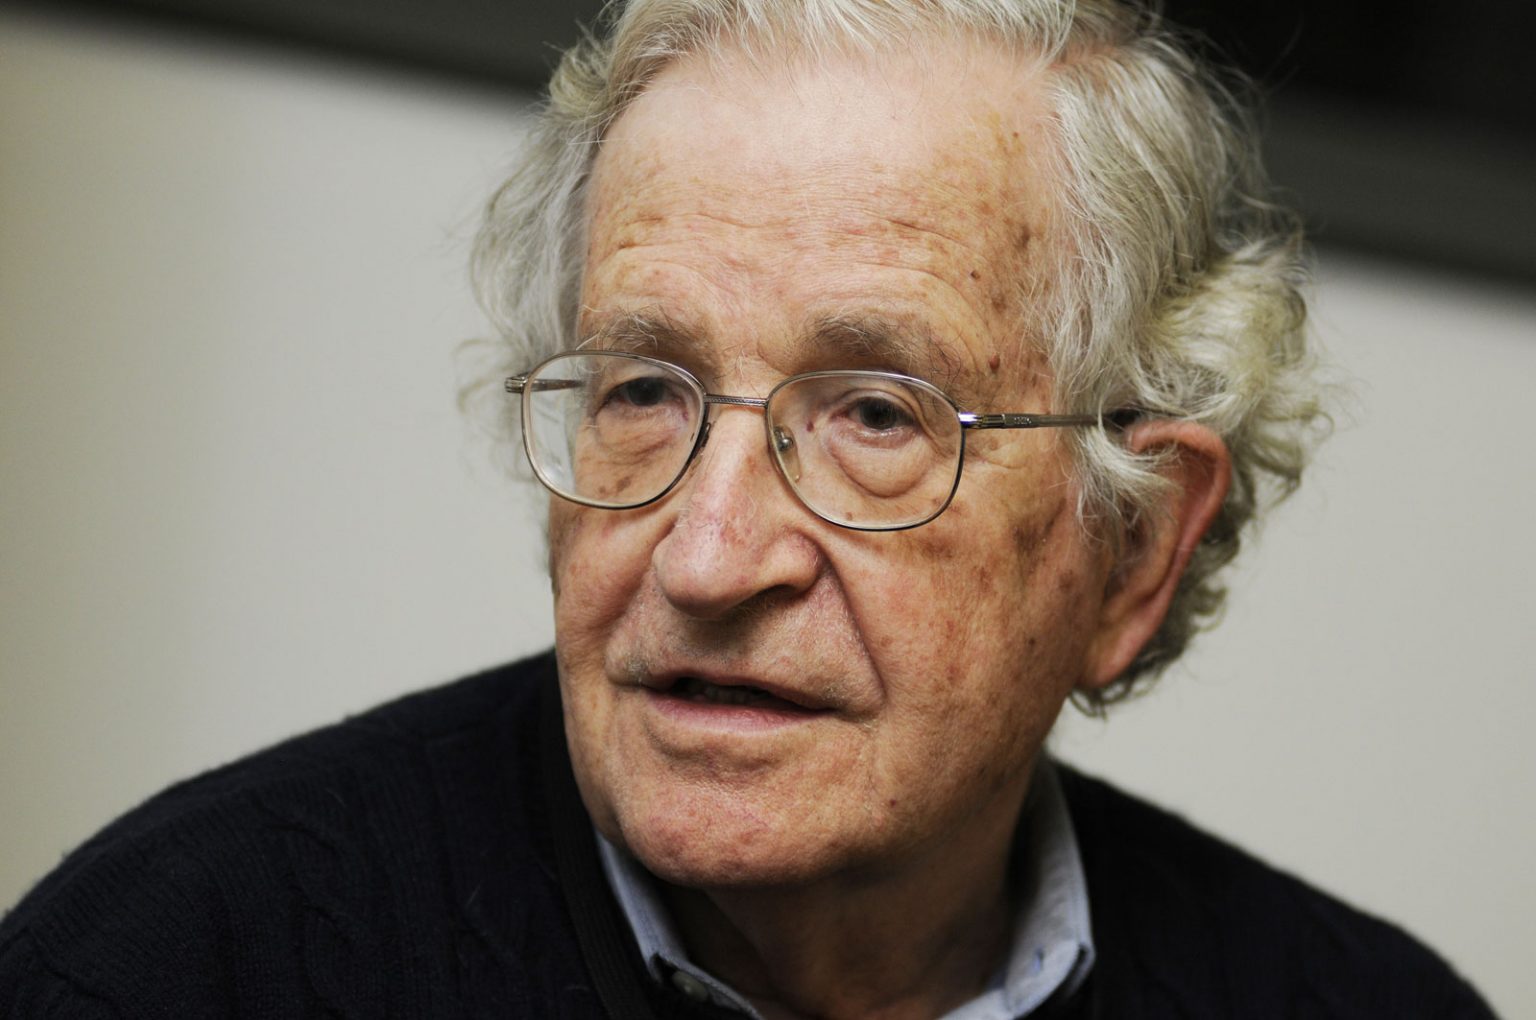 Noam-Chomsky-2010-1536x1020.jpg